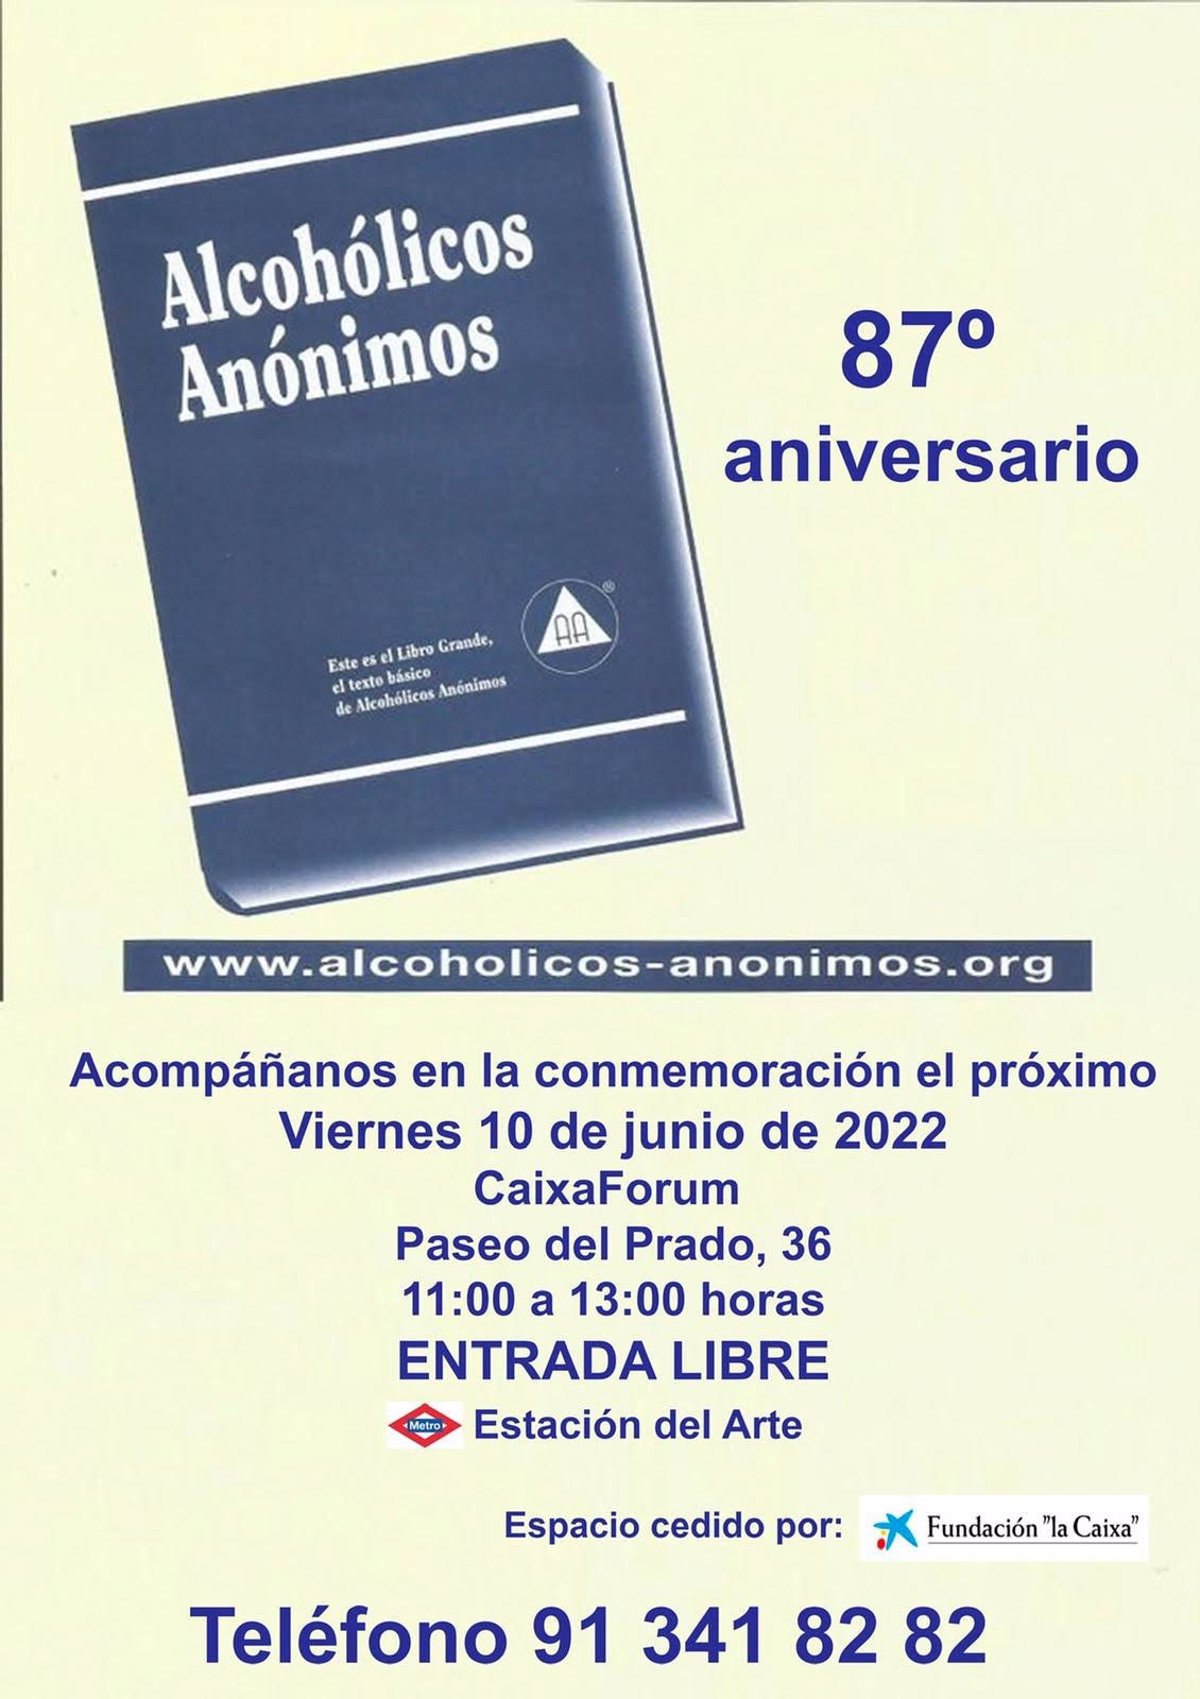 Alcohólicos Anónimos Celebra Su 87 Aniversario El Próximo Viernes En